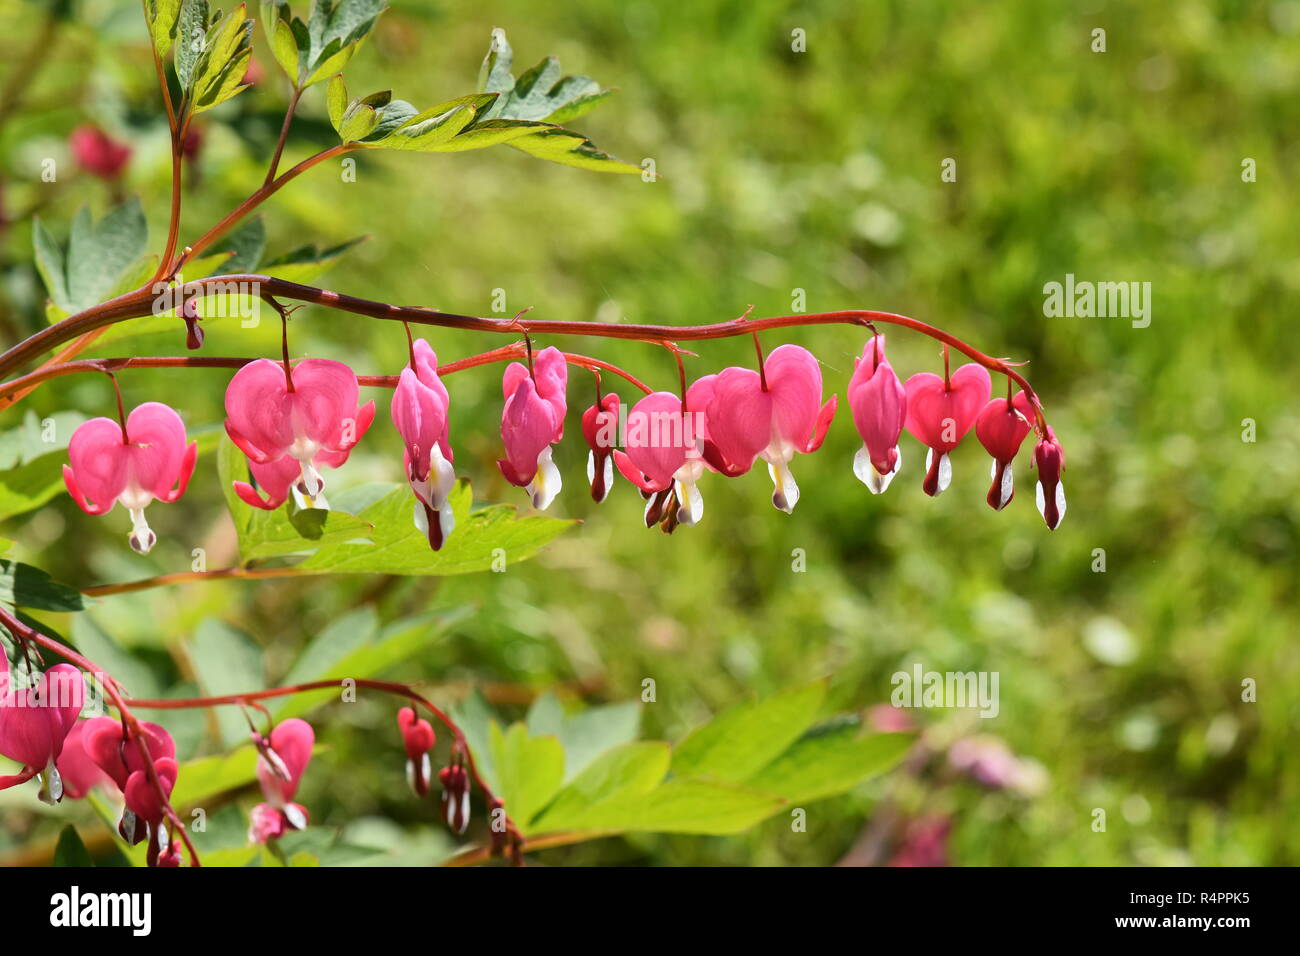 Die herzförmigen Blüten der blutende Herz pflanze Campanula pyramidalis  Californica in einem Garten Stockfotografie - Alamy